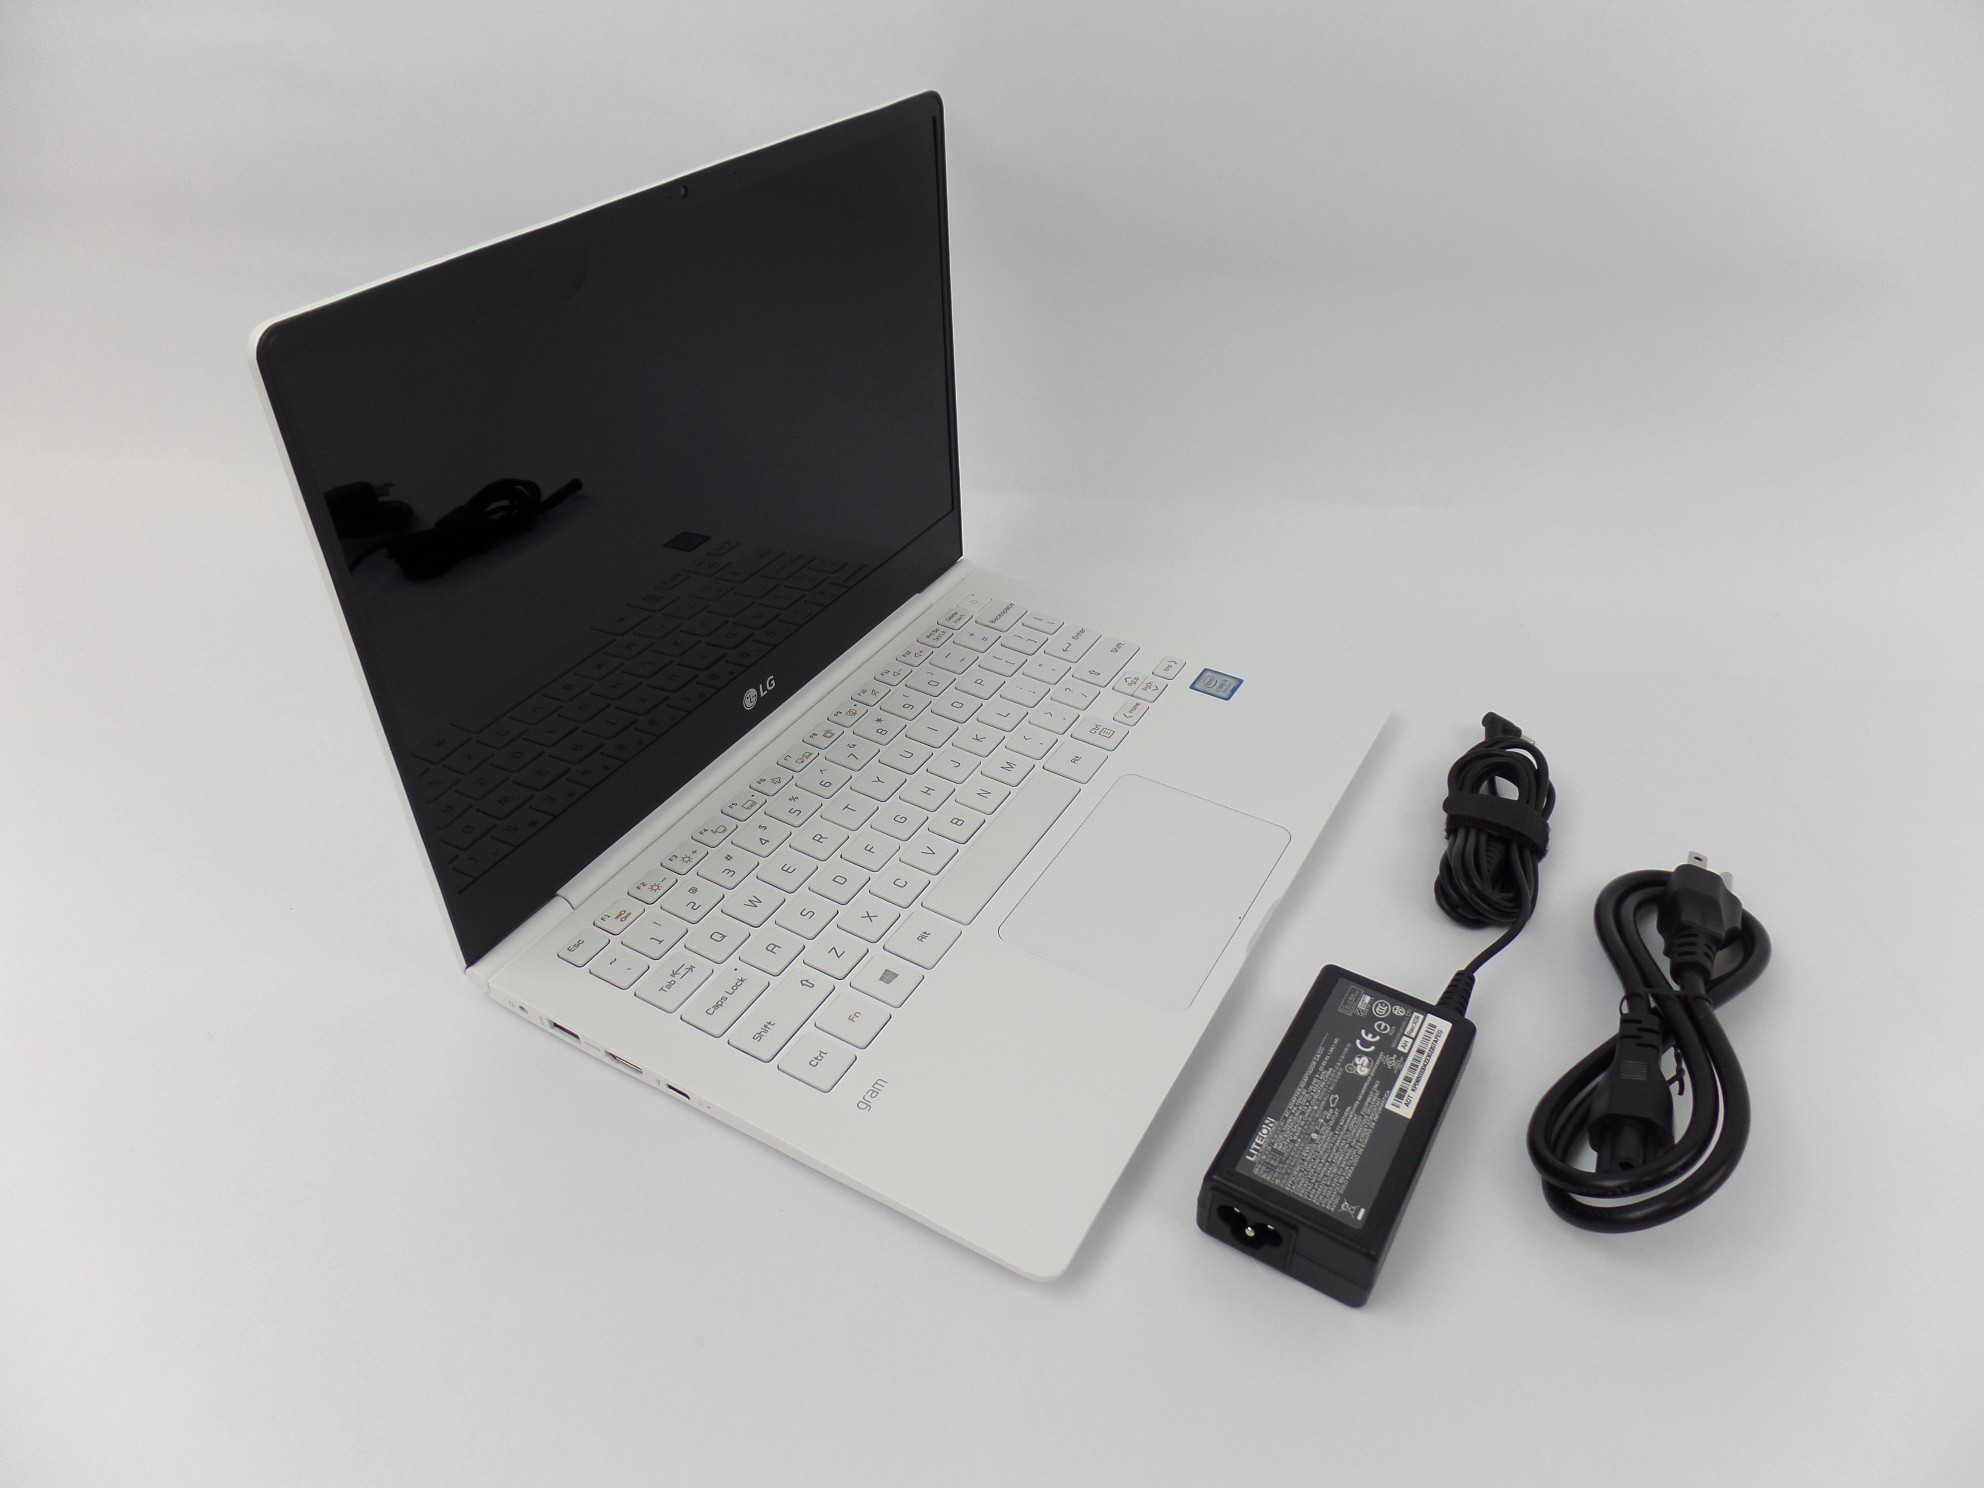 LG Gram 13Z980 13.3" FHD IPS i5-8250U 1.6GHz 8GB 256GB SSD W10H Laptop U